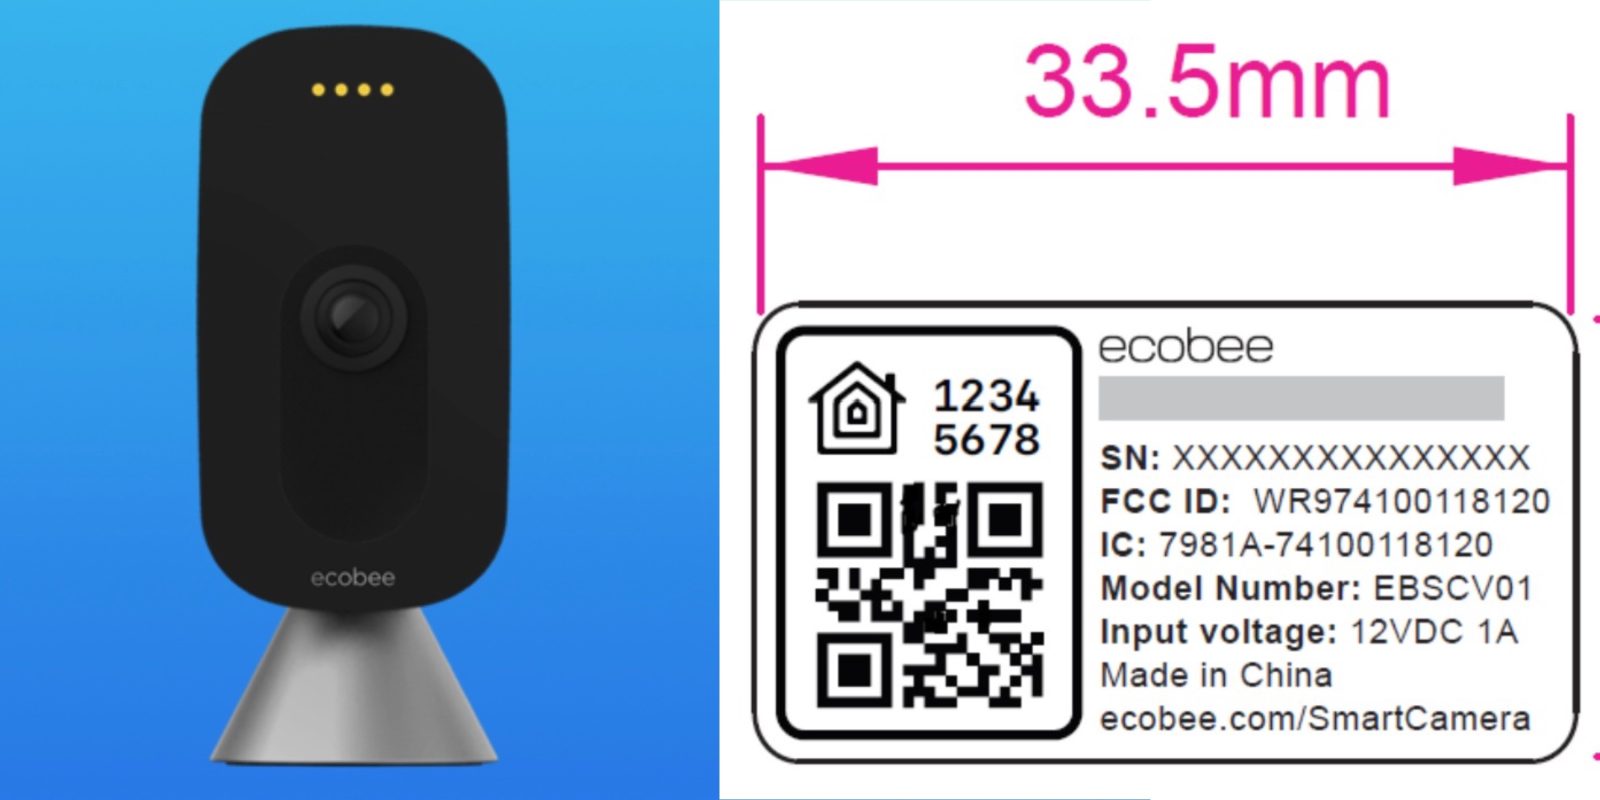 ecobee smart camera HomeKit support confirmed